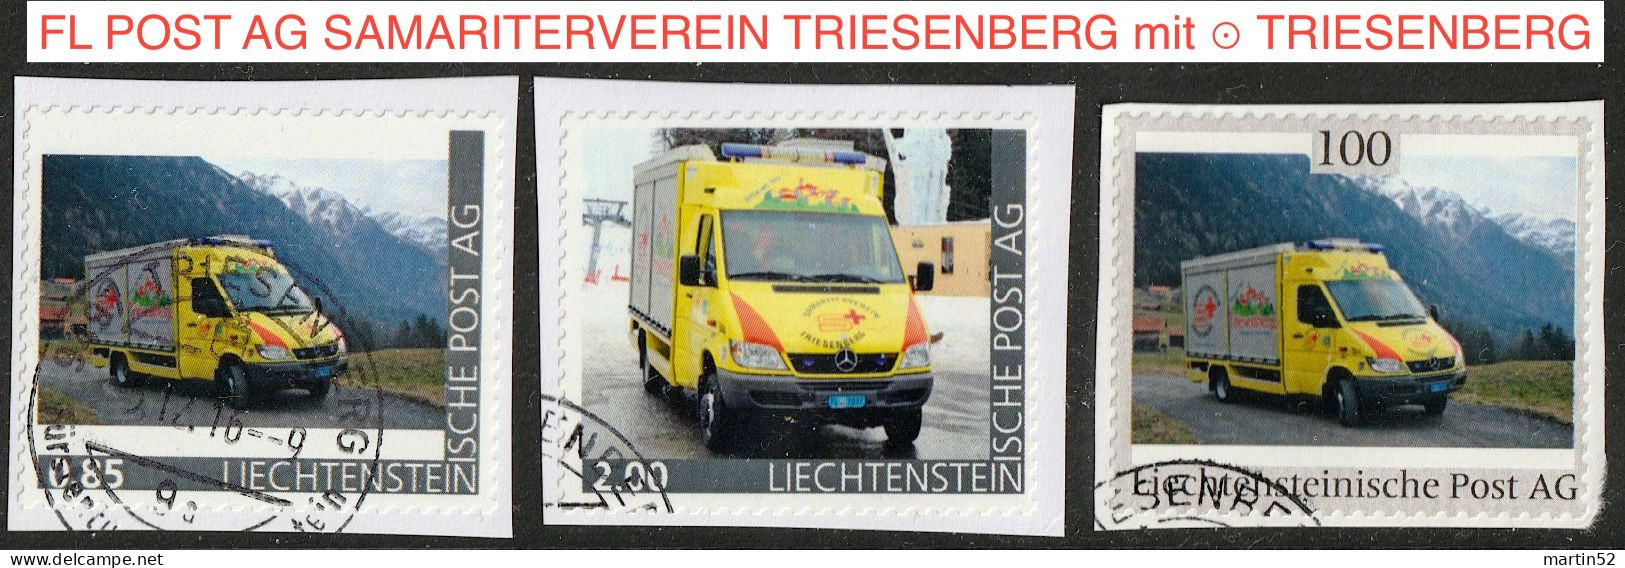 Liechtenstein 2016: Ausgabe Der FL POST AG "SAMARITERVEREIN TRIESENBERG" (Rettungs-Bus) Mit ⊙ Von TRIESENBERG - Varietà